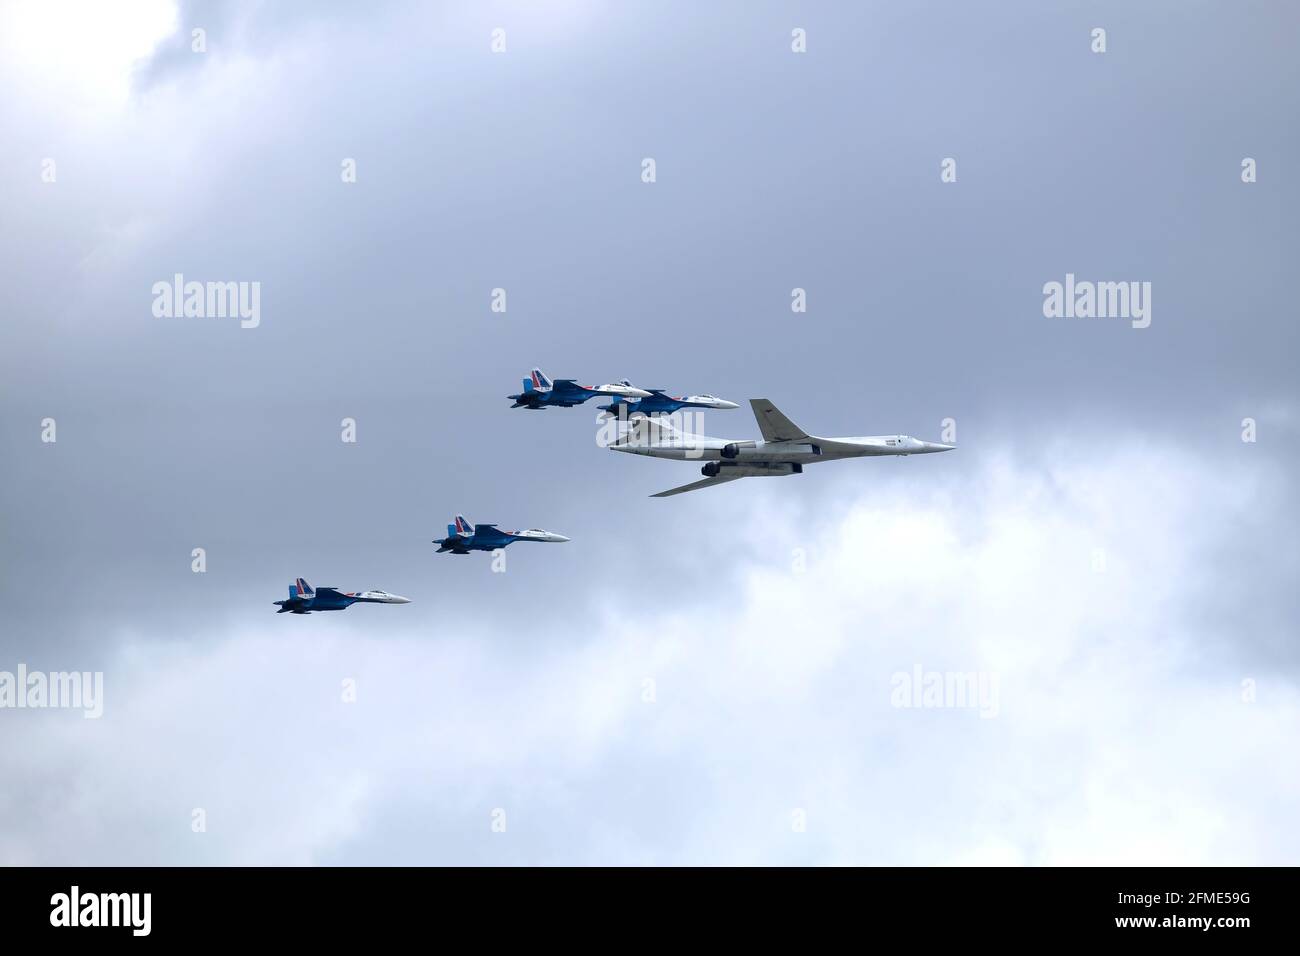 MOSCÚ, RUSIA - 7 de mayo de 2021: Ejército ruso Supersonic bombardero-misil portador TU-160 White Swan y cuatro combatientes SU-35S siguiendo por los lados Foto de stock